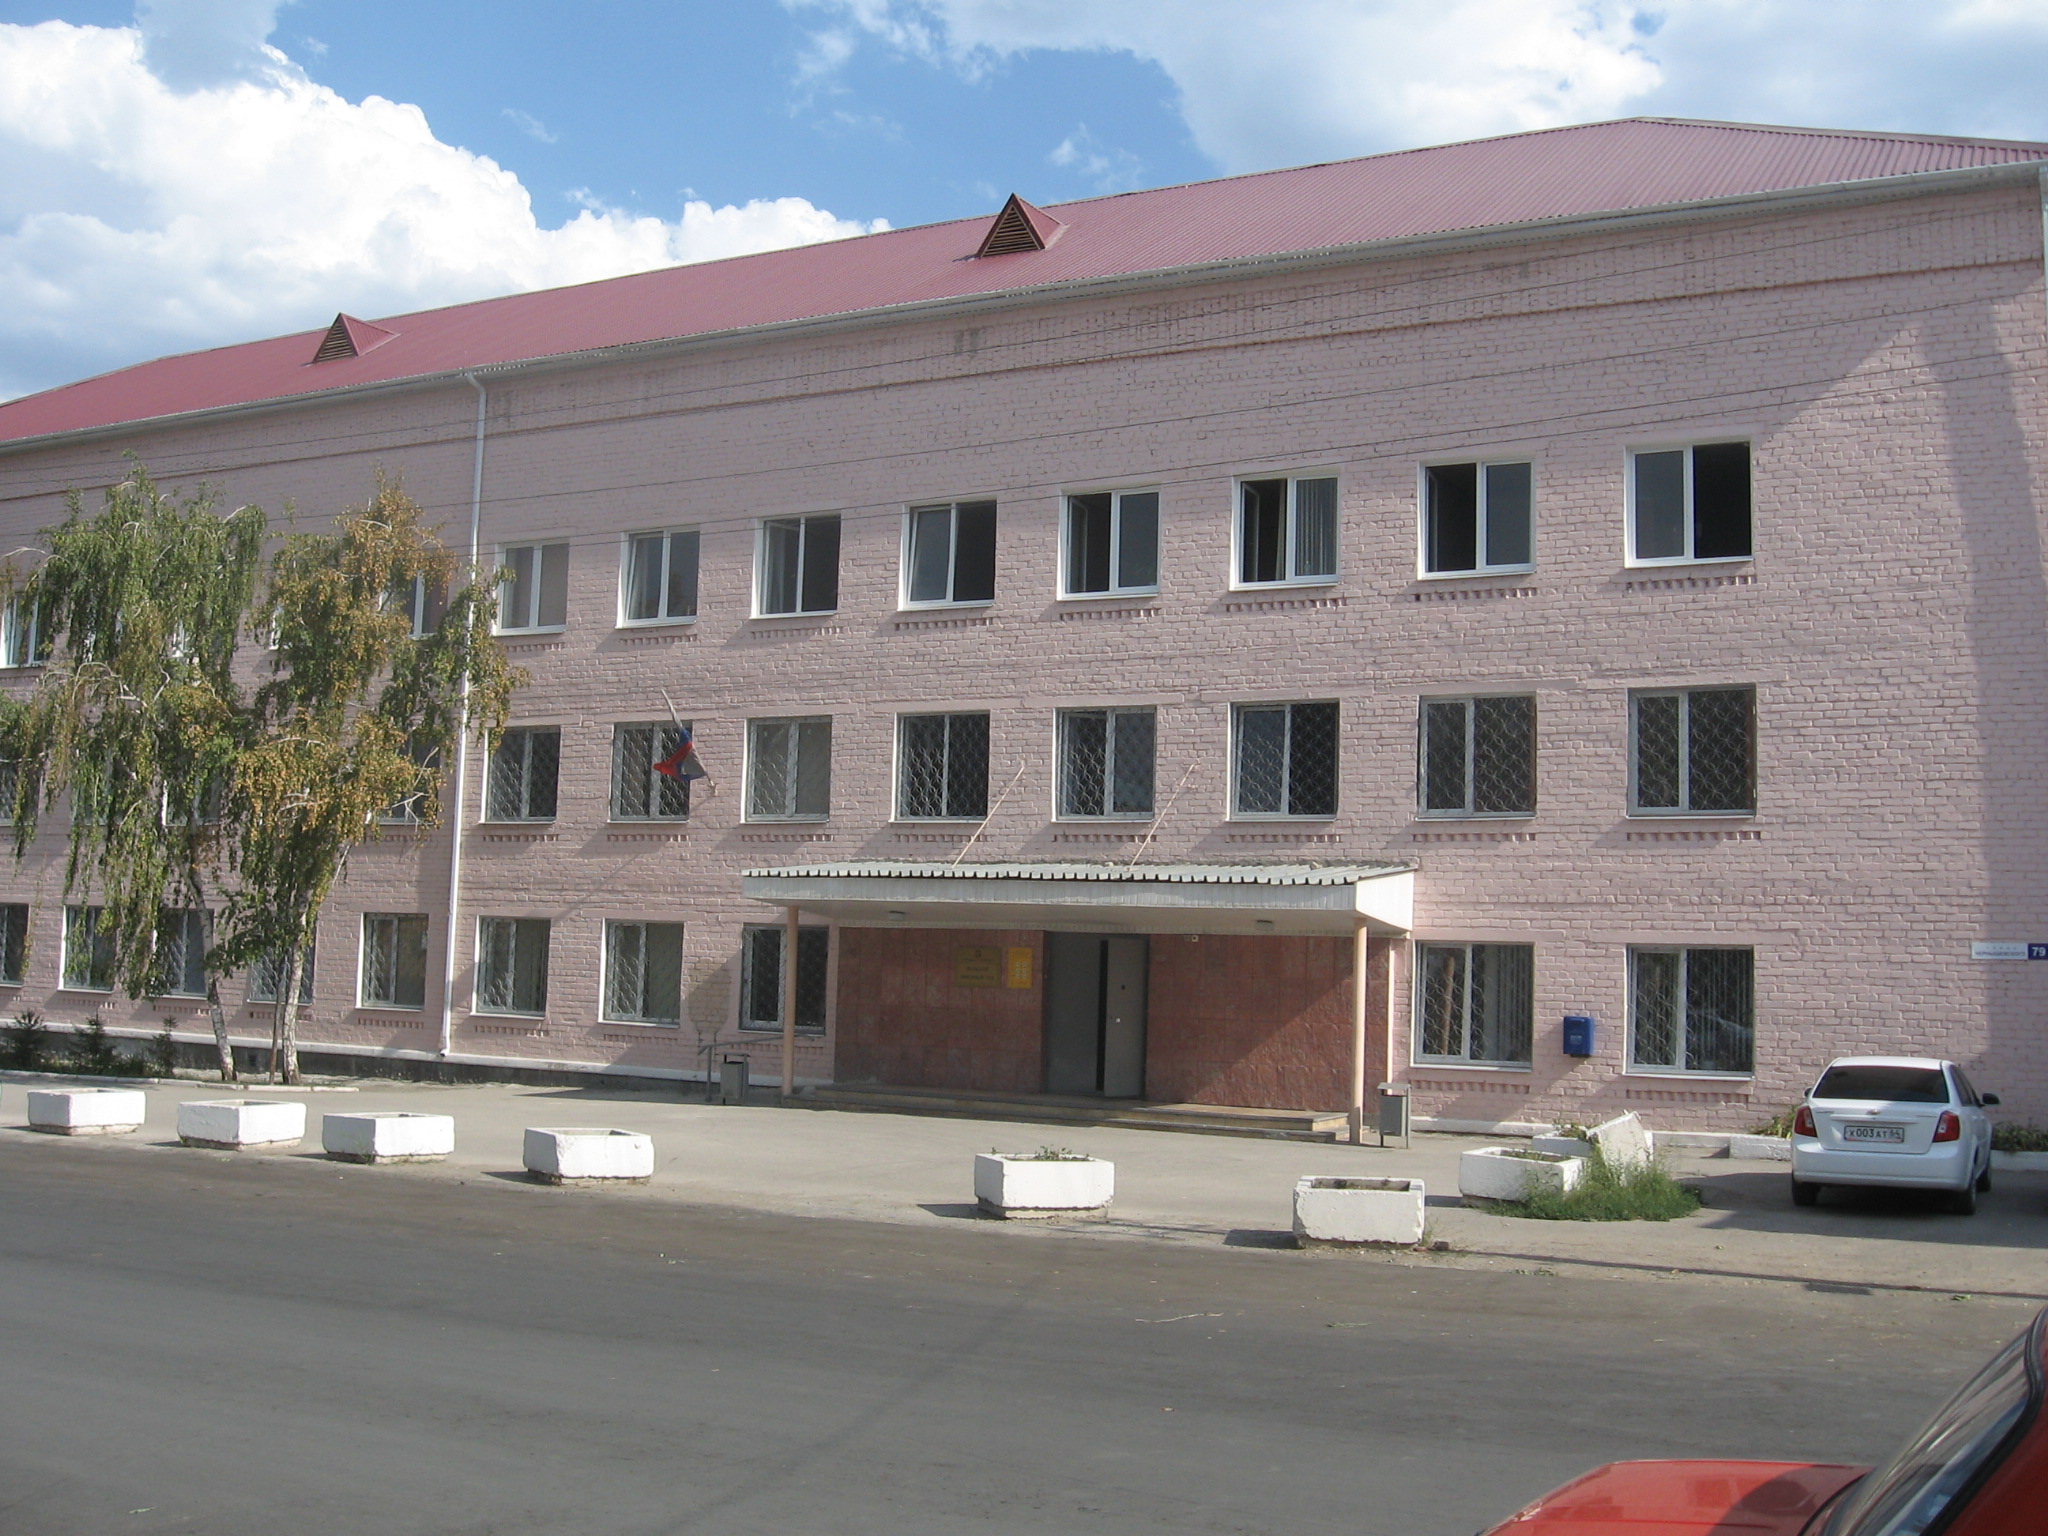 Сайт вольского районного суда саратовской